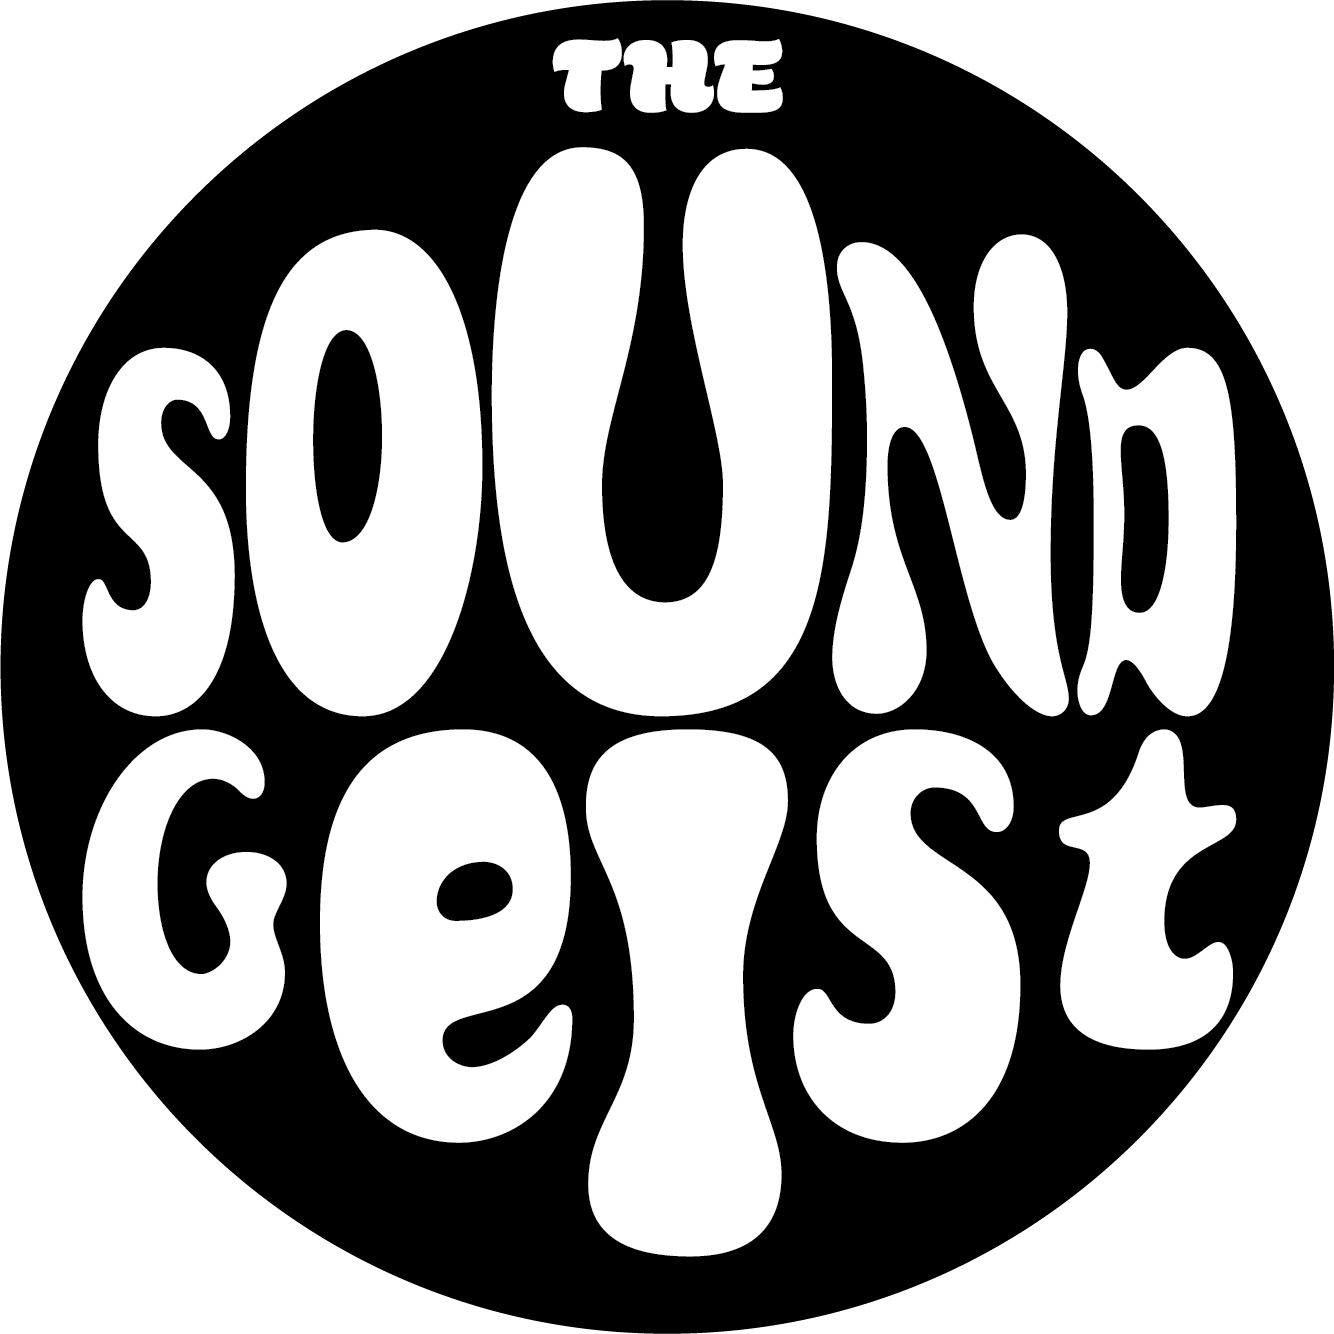 The Soundgeist